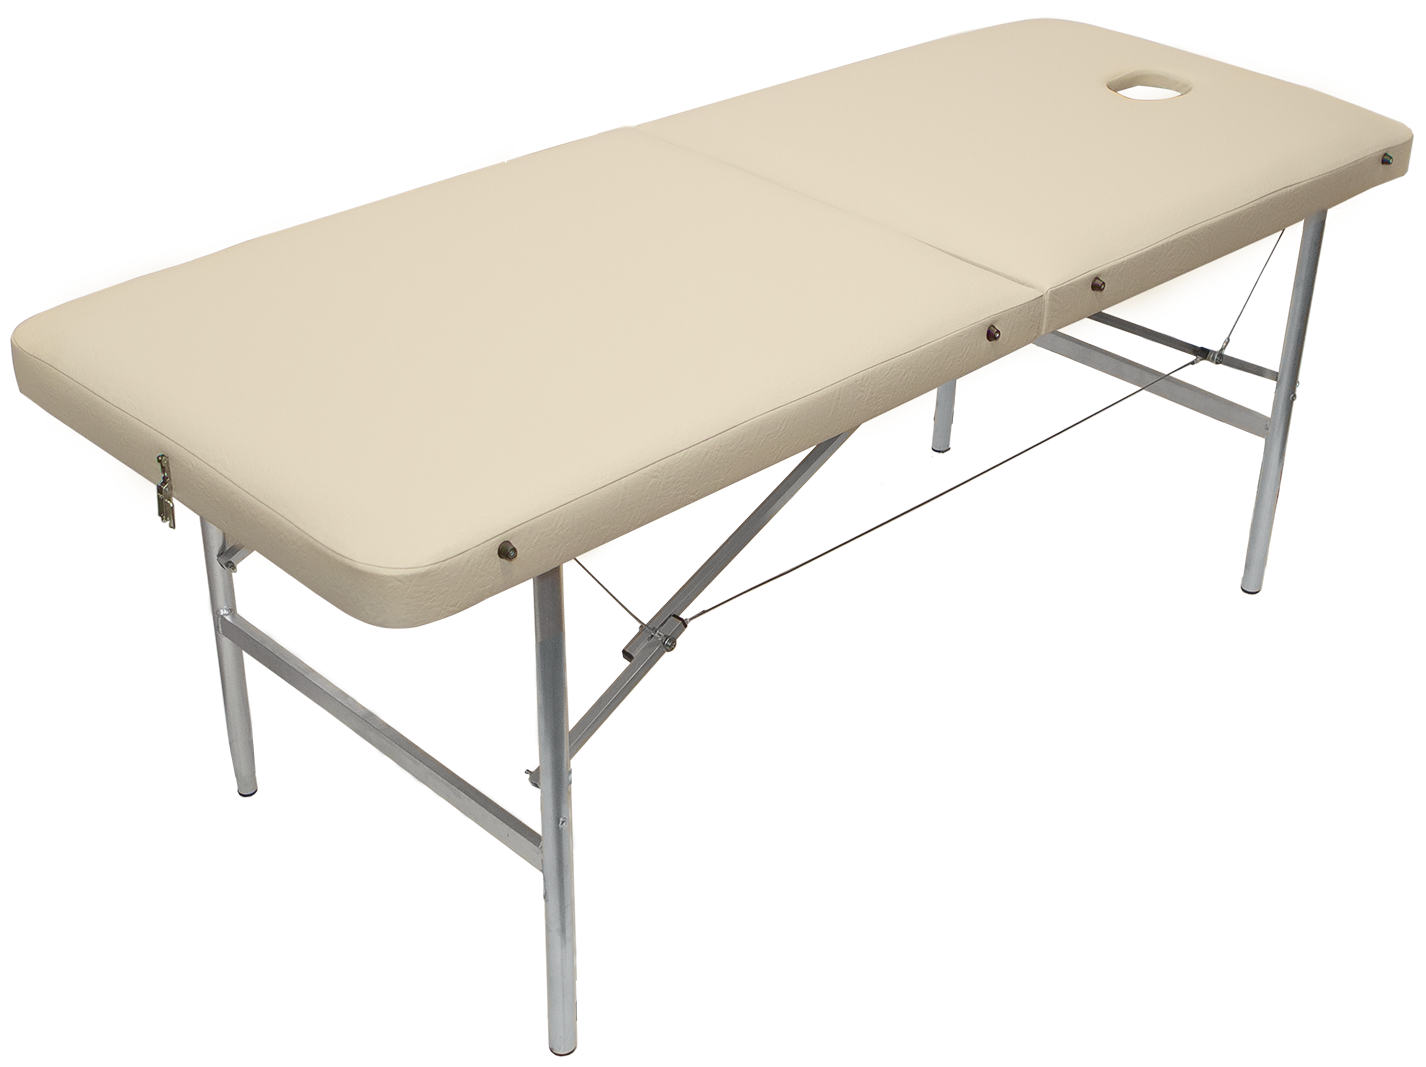 Усиленный универсальный массажный стол XL с шириной 70 см и максимальной нагрузкой до 250 кг